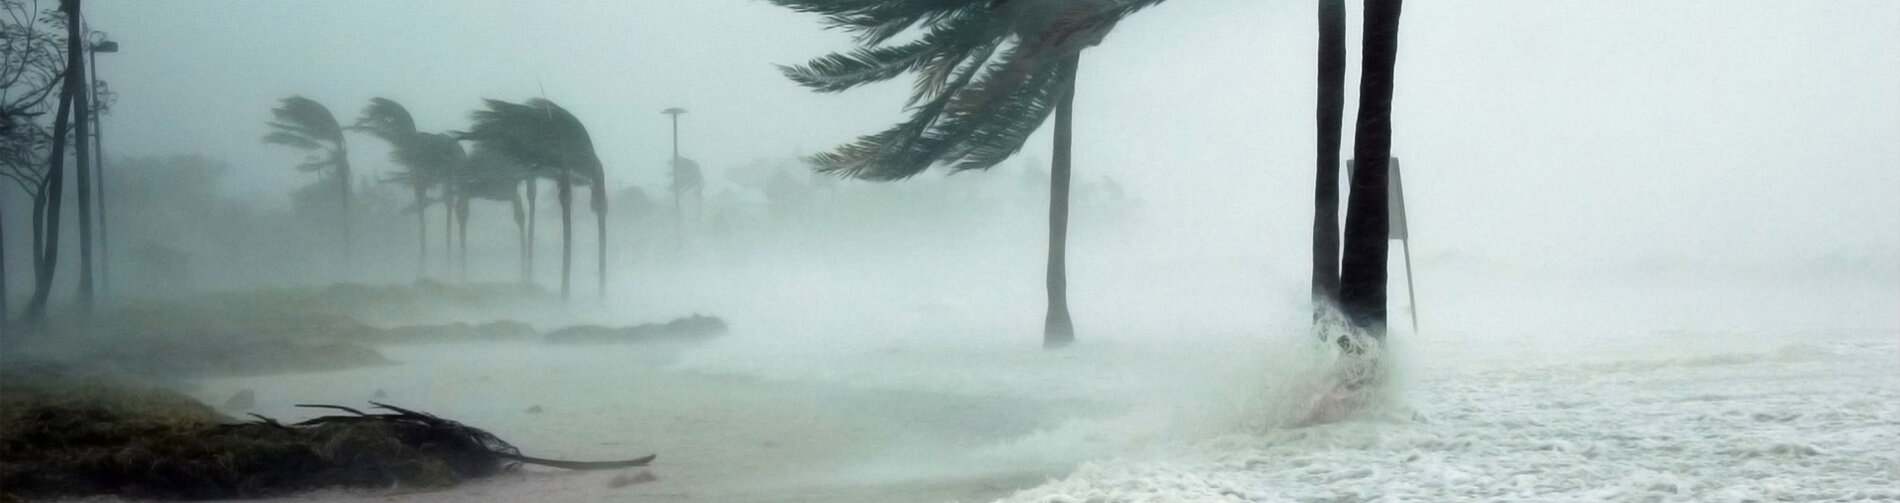 A hurricane blowing through a beach.